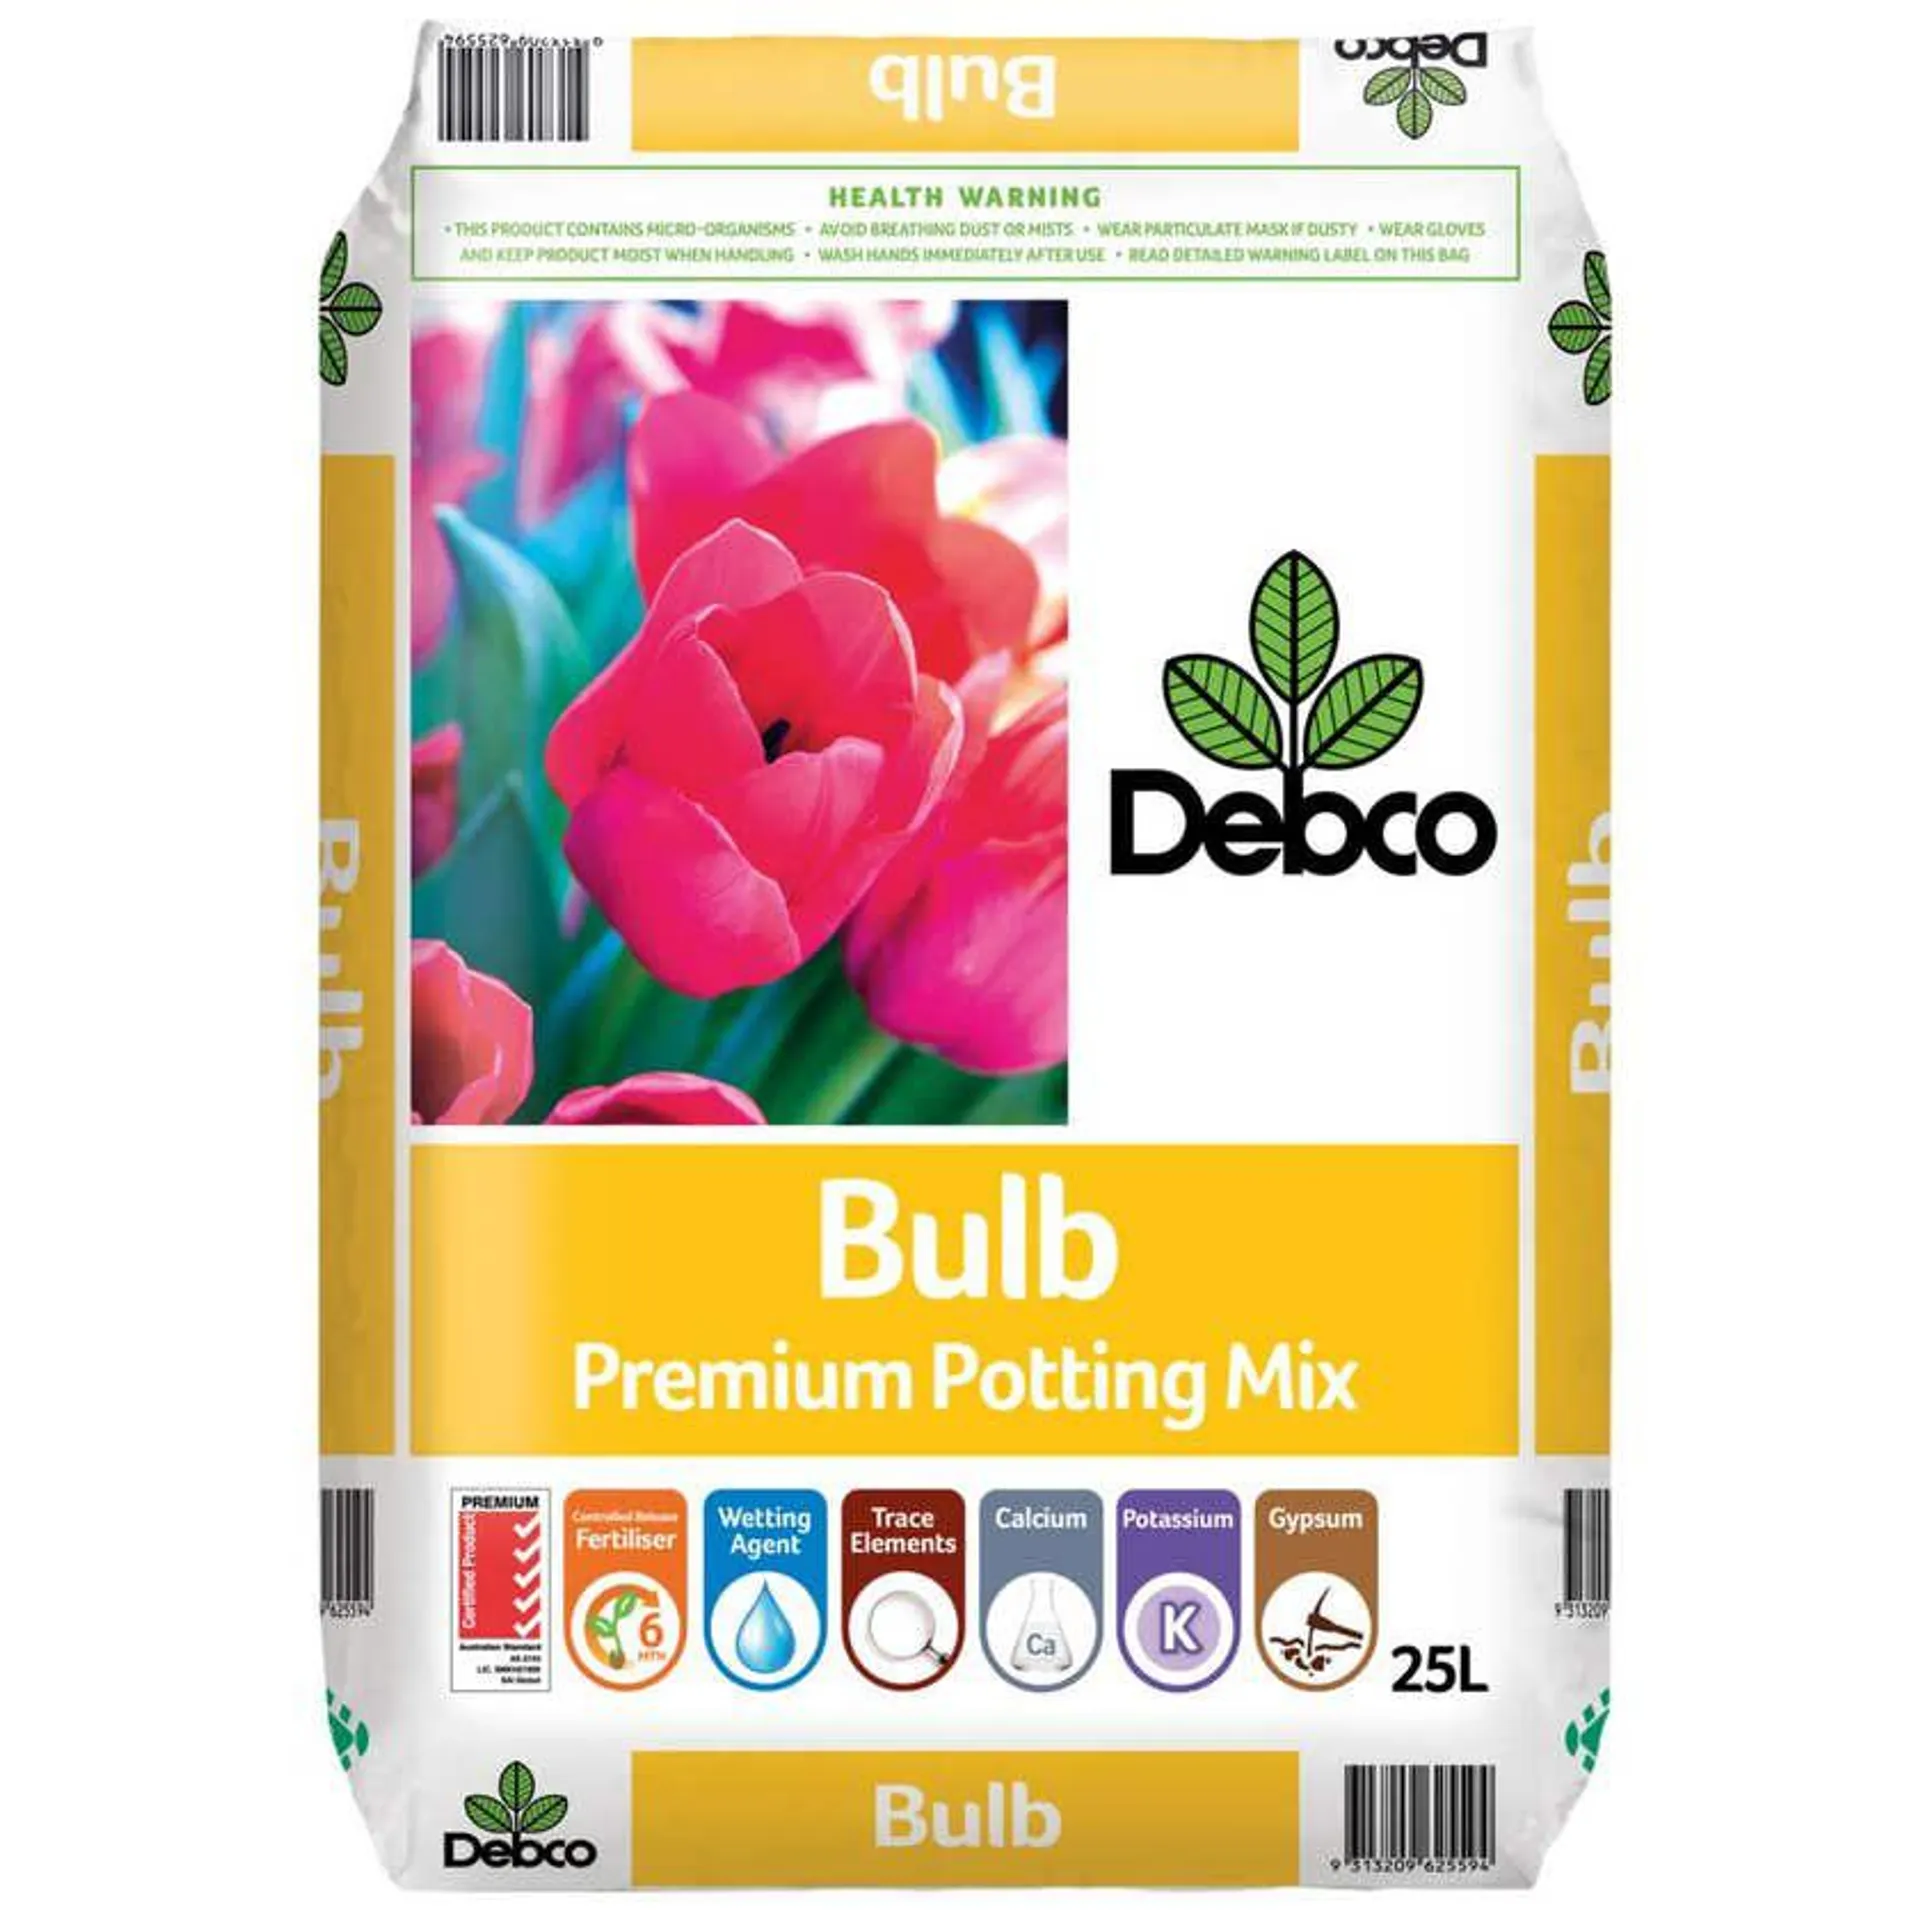 Debco Bulb Premium Potting Mix 25L